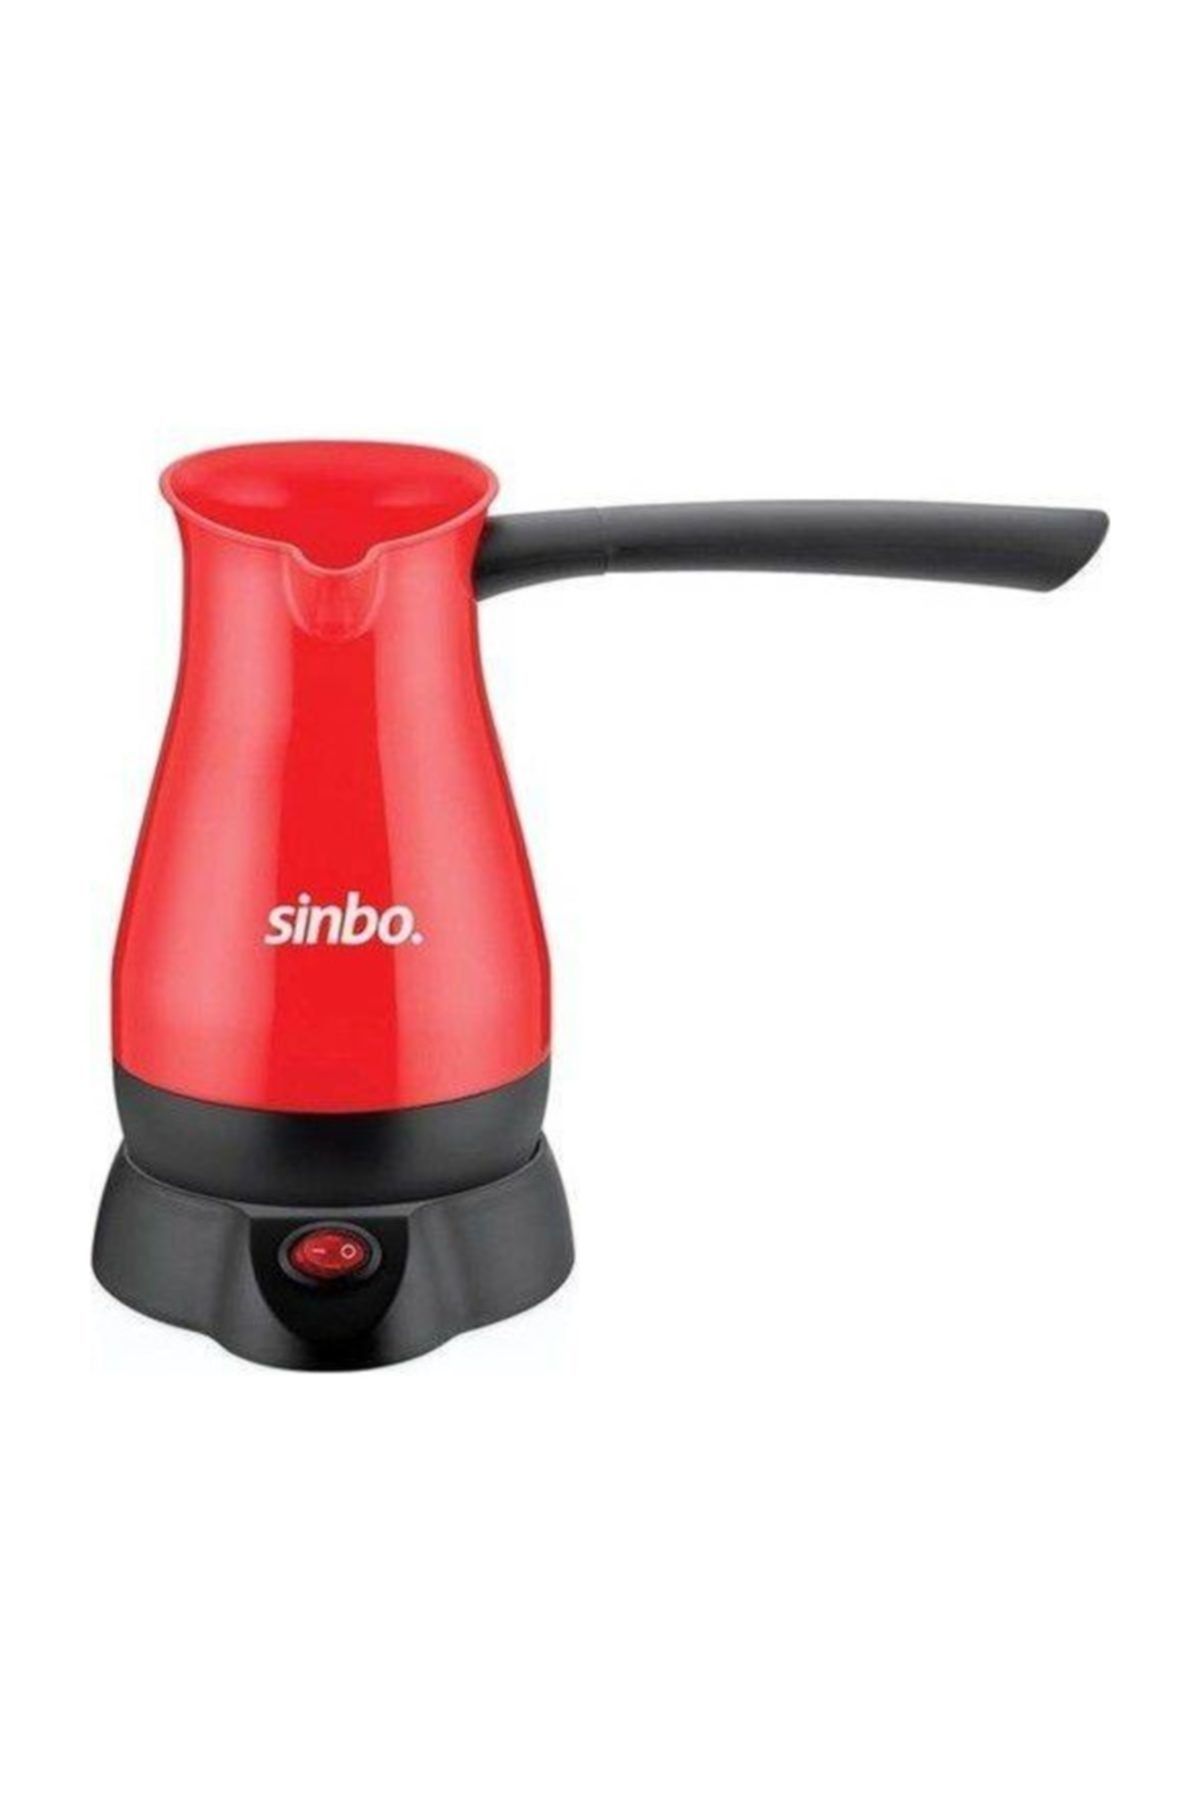 Sinbo Scm-2948 Kırmızı Kahve Makinesi